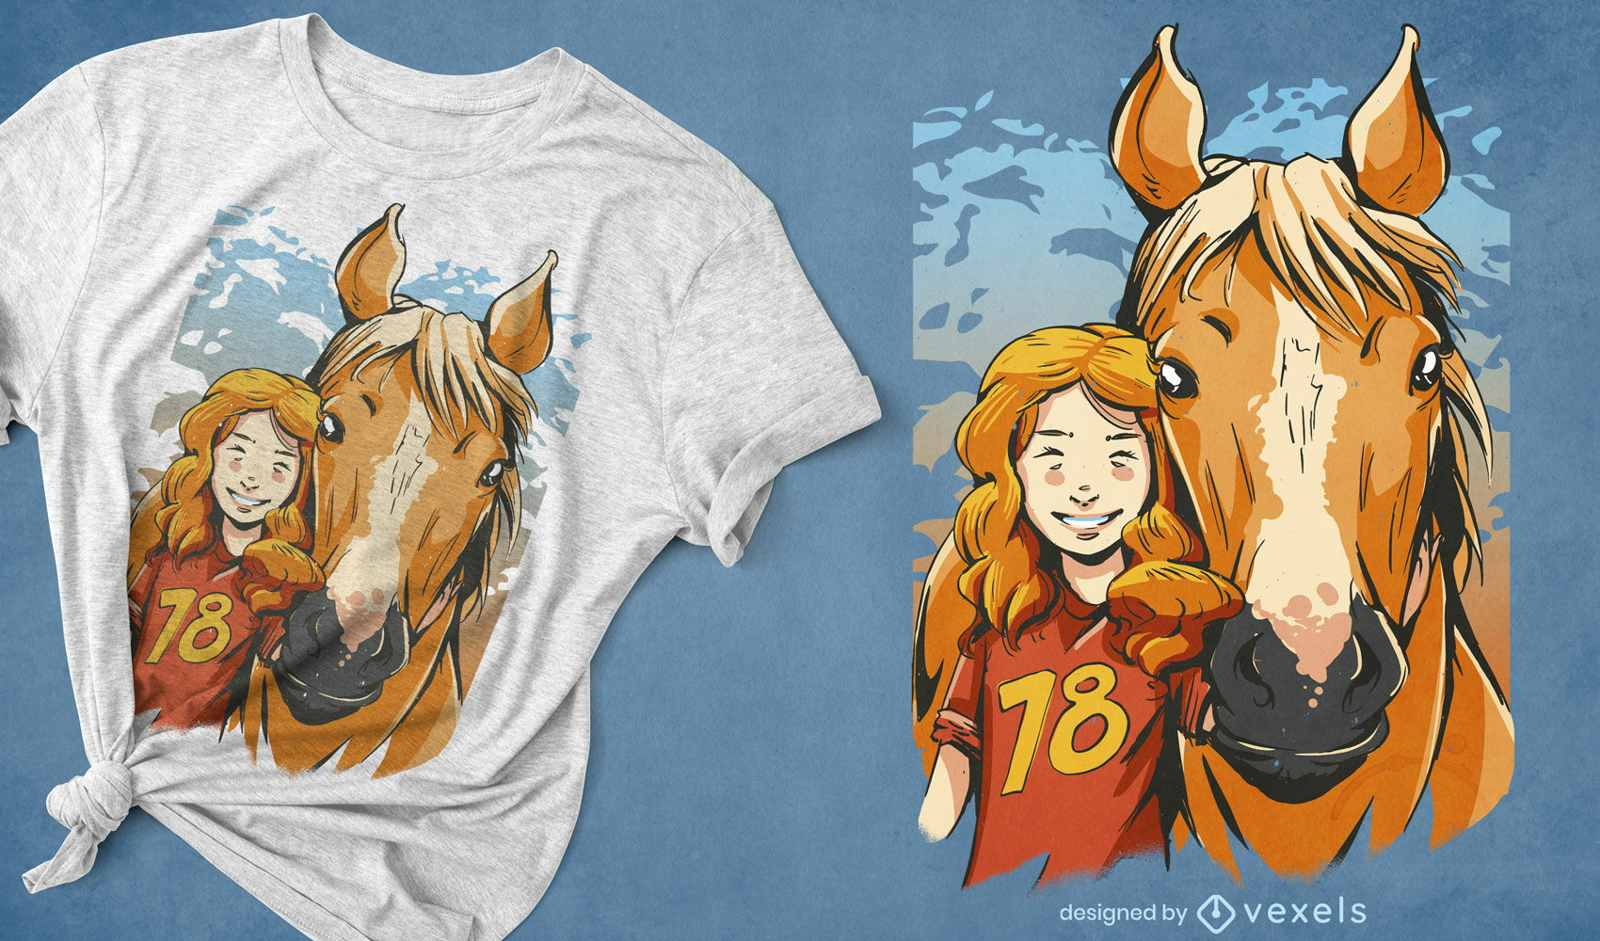 M?dchen- und Pferdeportr?t-T-Shirt-Design